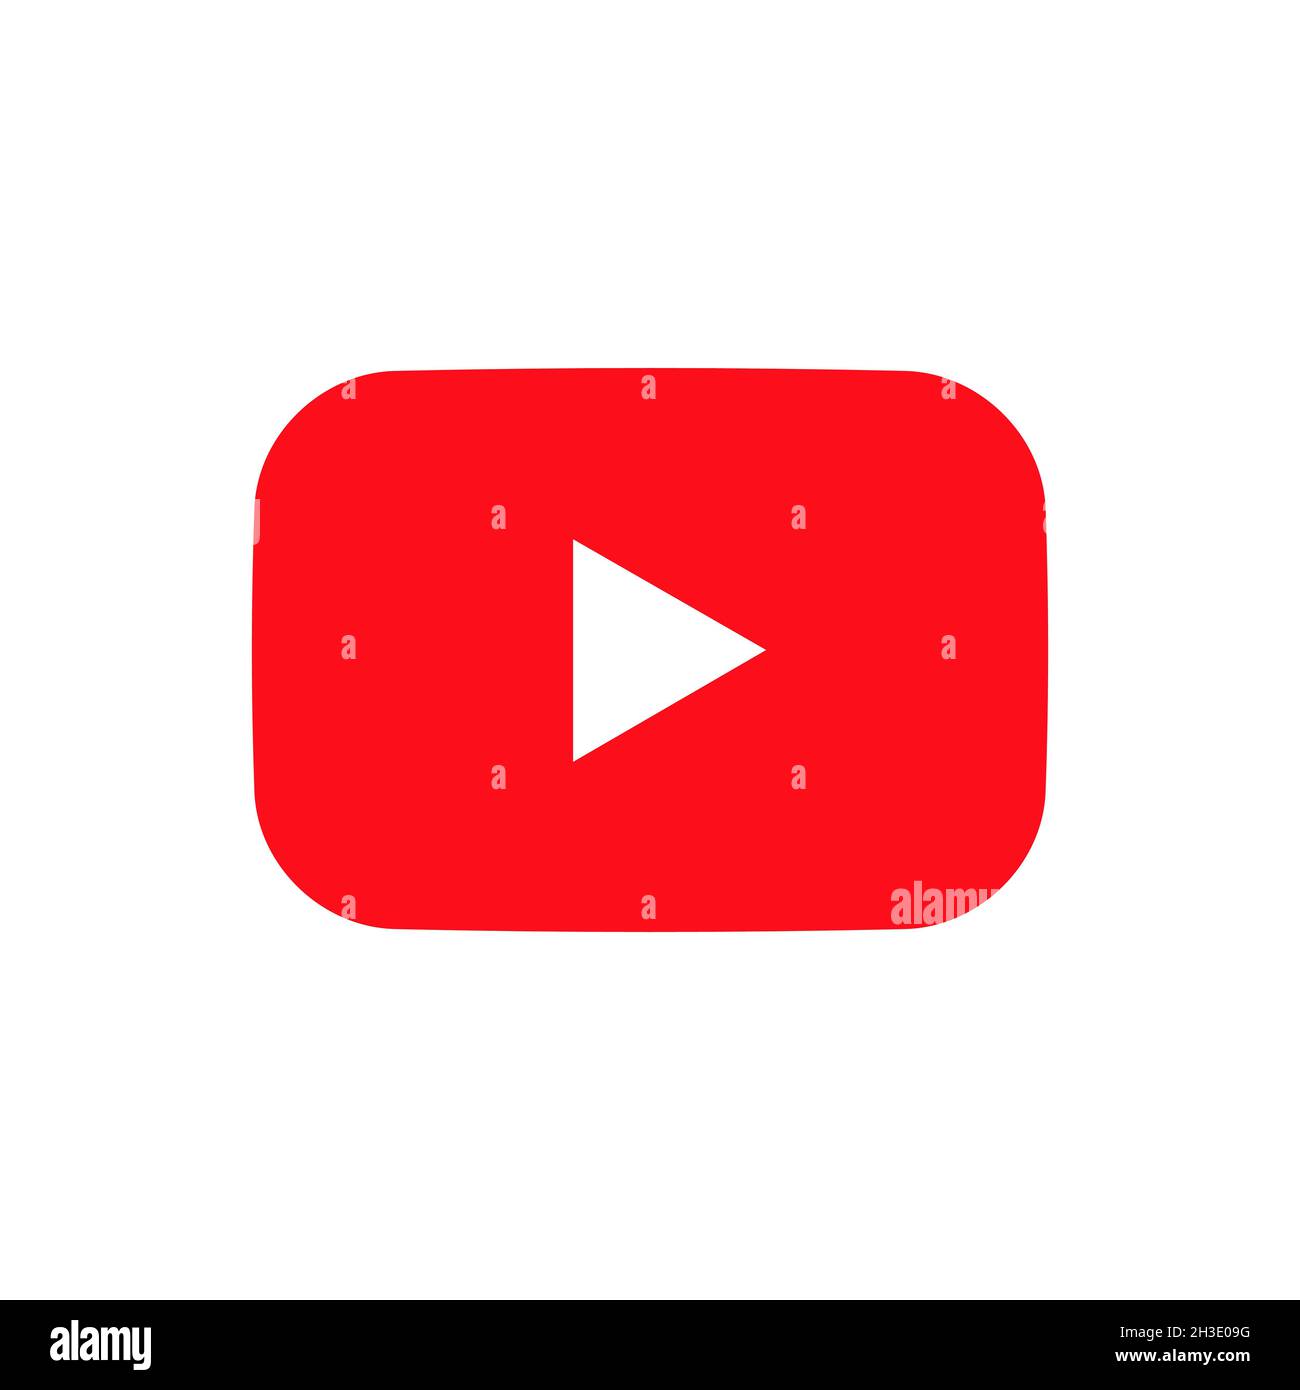 Youtube logo: Bạn đã bao giờ tự hỏi về sự nghĩa của logo Youtube? Hãy xem ngay bức hình về logo này để hiểu thêm về ý nghĩa của nó và tại sao nó trở thành biểu tượng của mạng xã hội video lớn nhất thế giới.